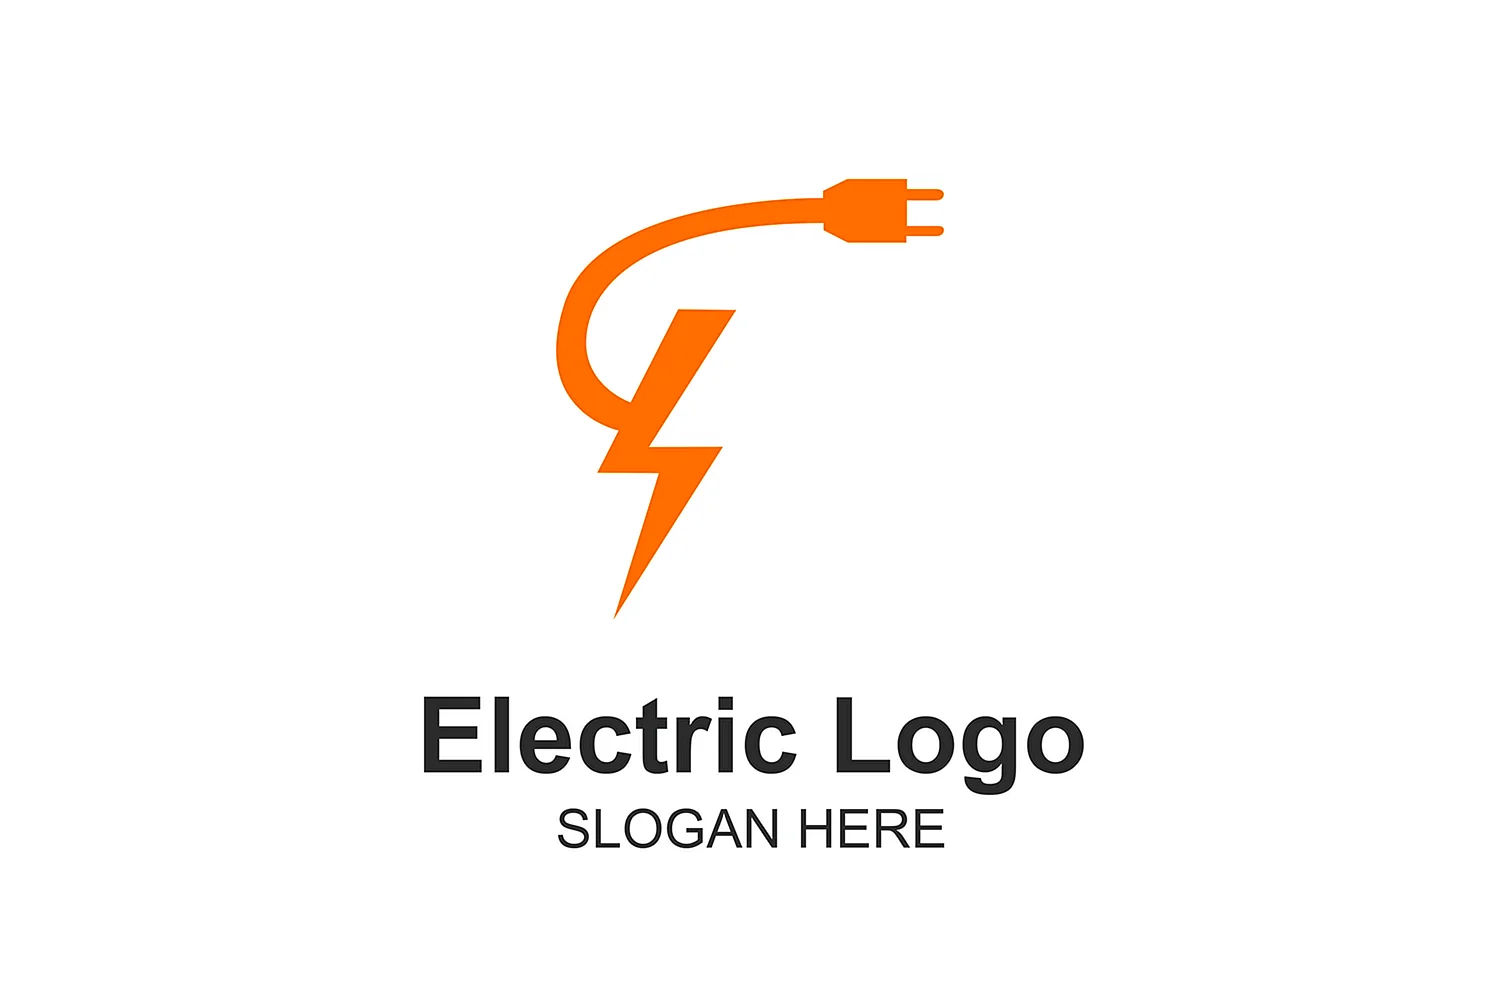 Логотип Electric